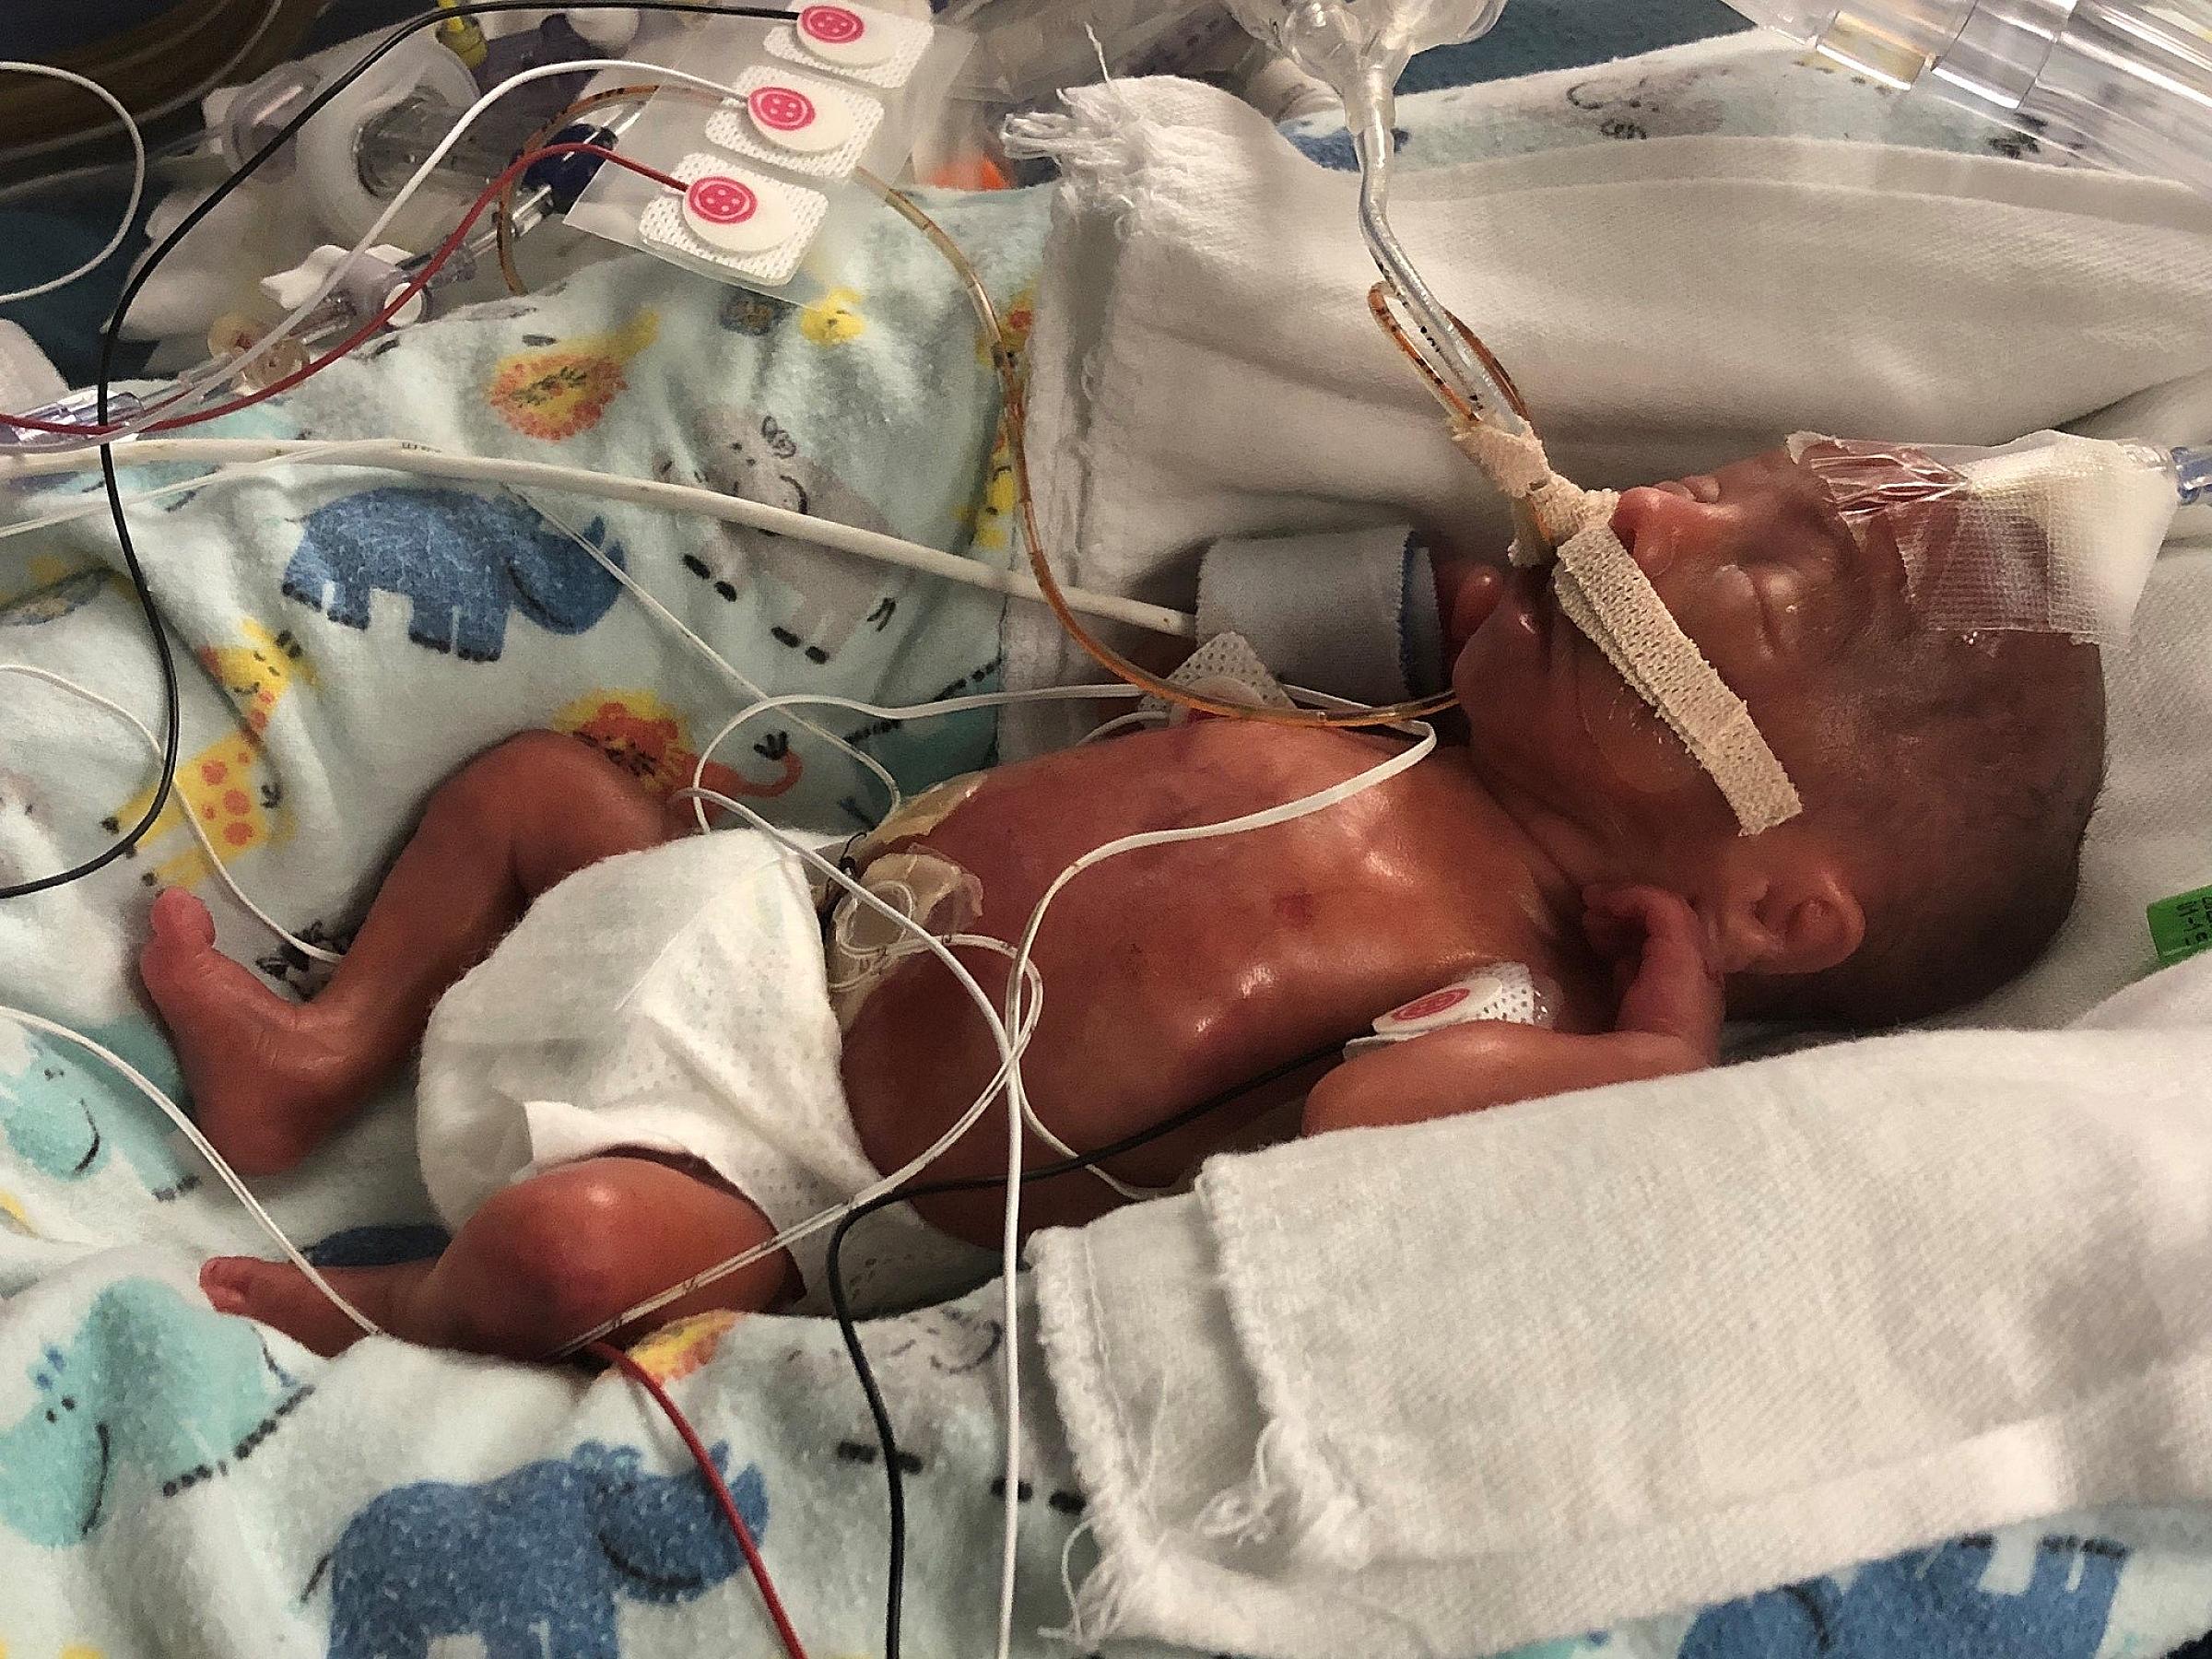 Avery Matney, NICU baby at University of Utah Health